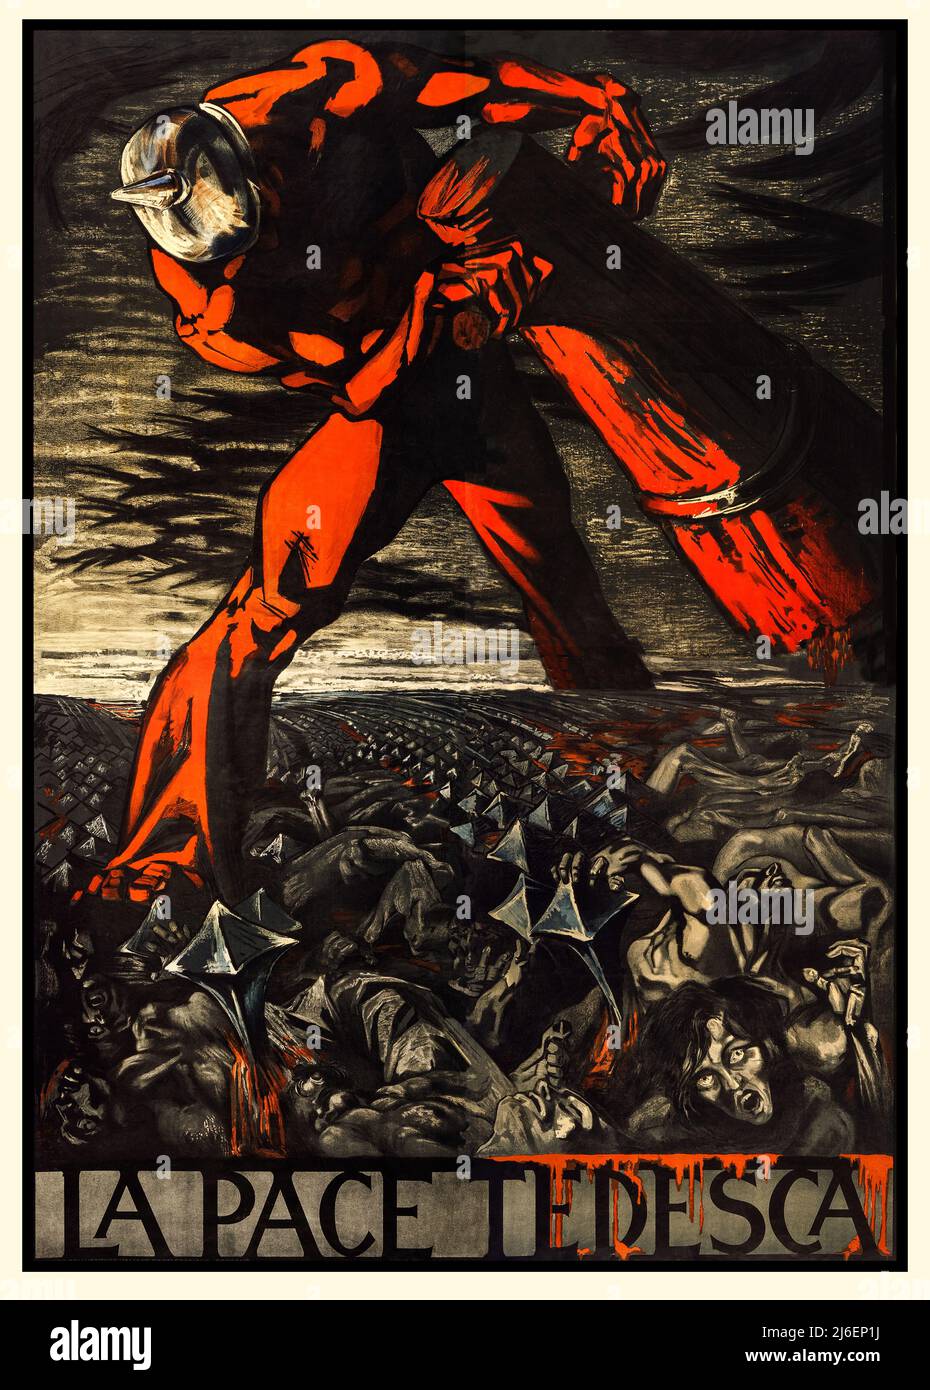 Une affiche de propagande italienne de 1917, avec le texte "la Pace Tedesca" signifiant "la paix allemande". L'affiche montre un géant, représentant l'Allemagne, écrasant les corps de civils italiens. L'artiste est Sergio Canevari Banque D'Images